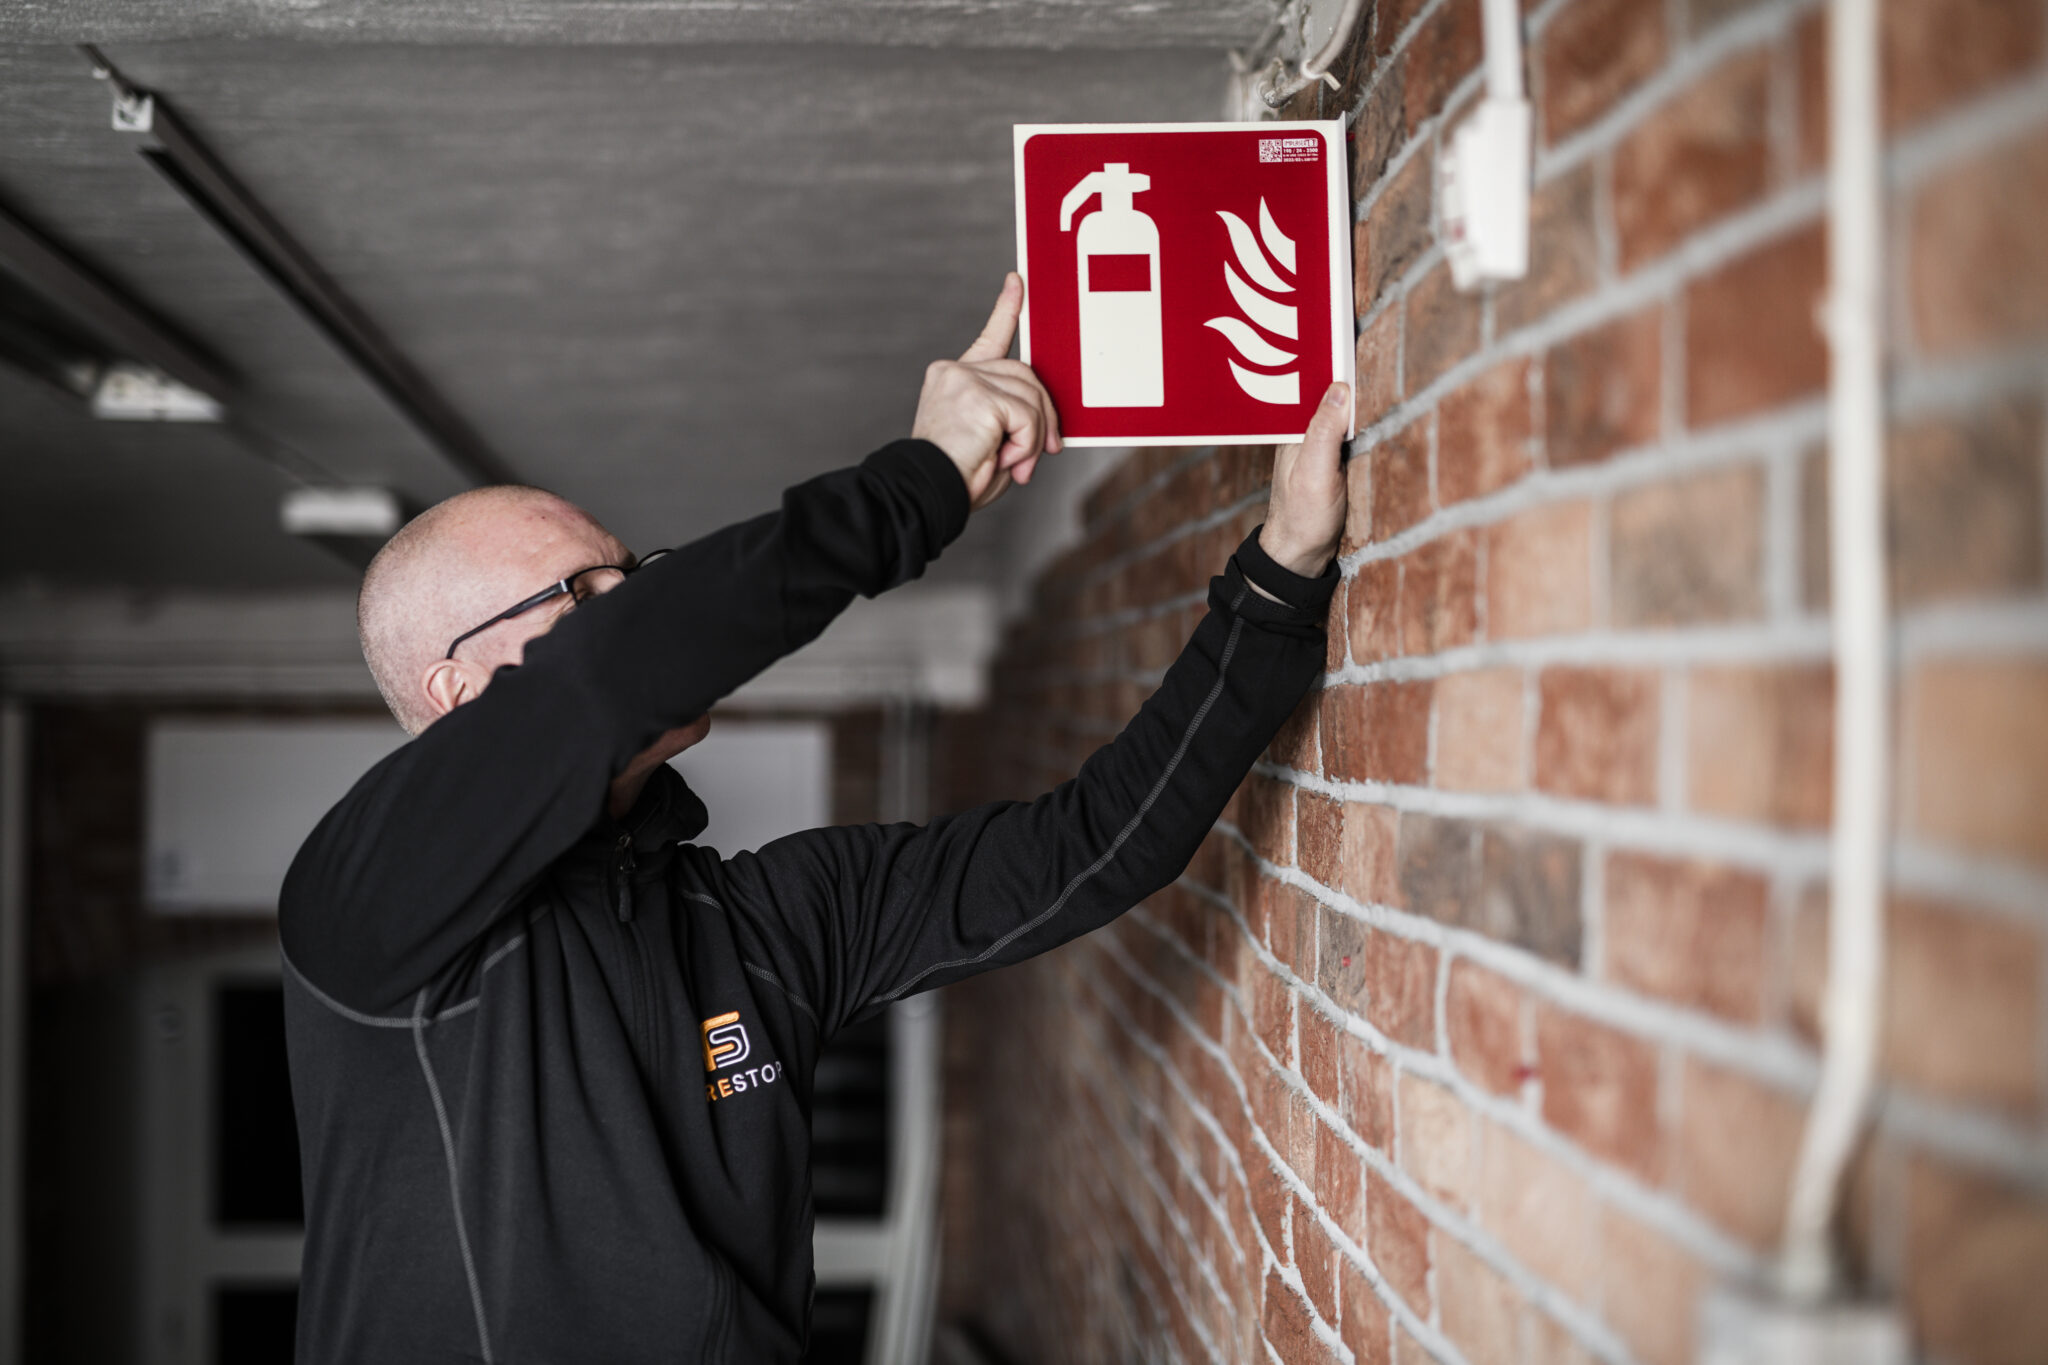 Thomas på företaget FireStop sätter upp en skylt för handbrandsläckare i samband med systematiskt brandskyddsarbete.